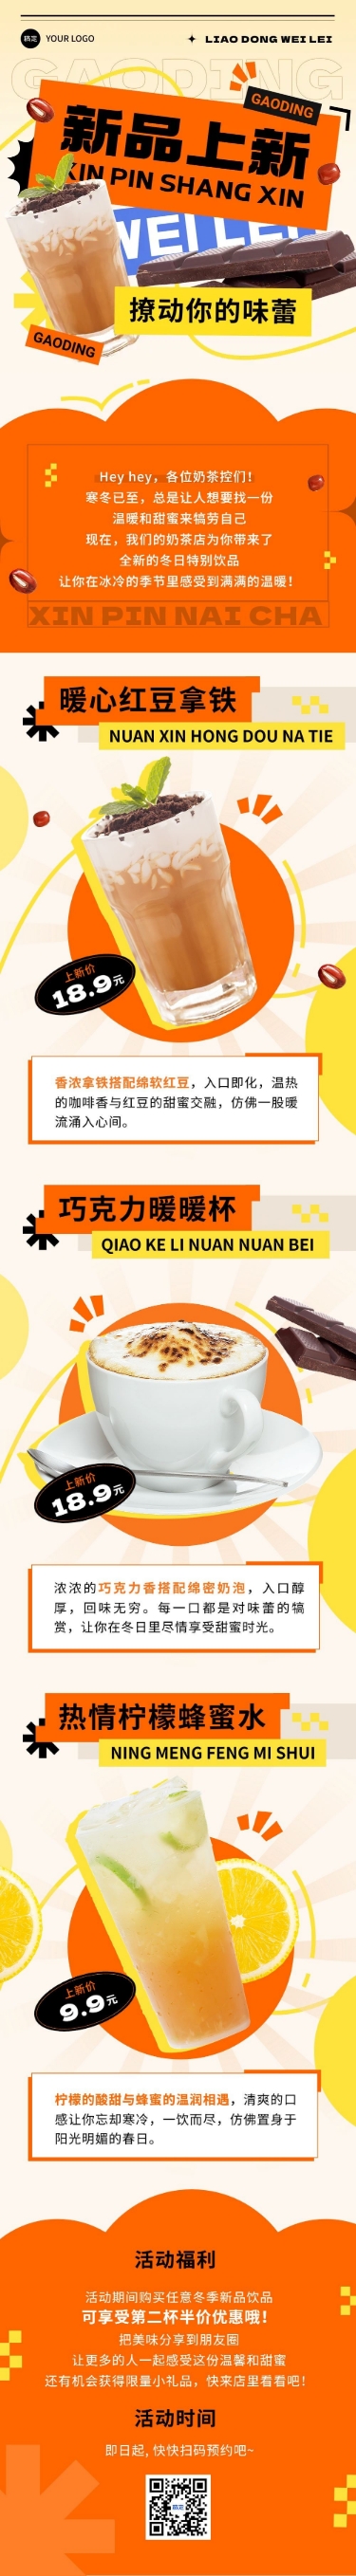 饮品奶茶新品上市宣传微信公众号文章长图预览效果